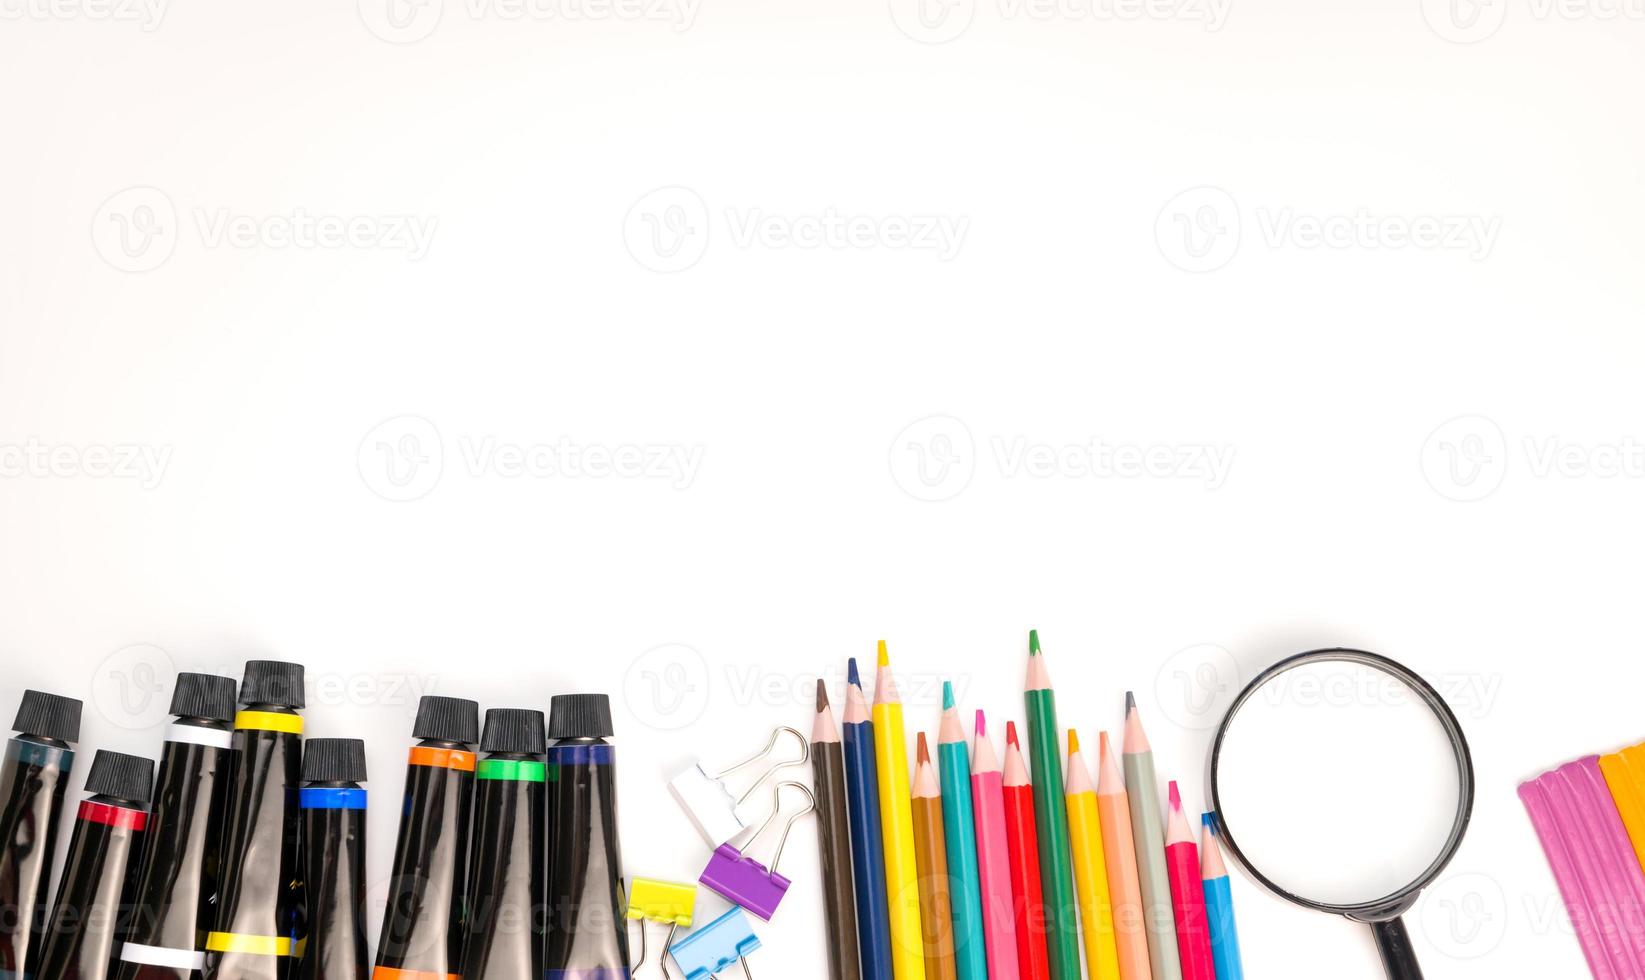 terug naar school- concept,.flalt leggen met potlood, vergrootglas, papier clips, rekenmachine.copyspace banner.preschool.art benodigdheden foto